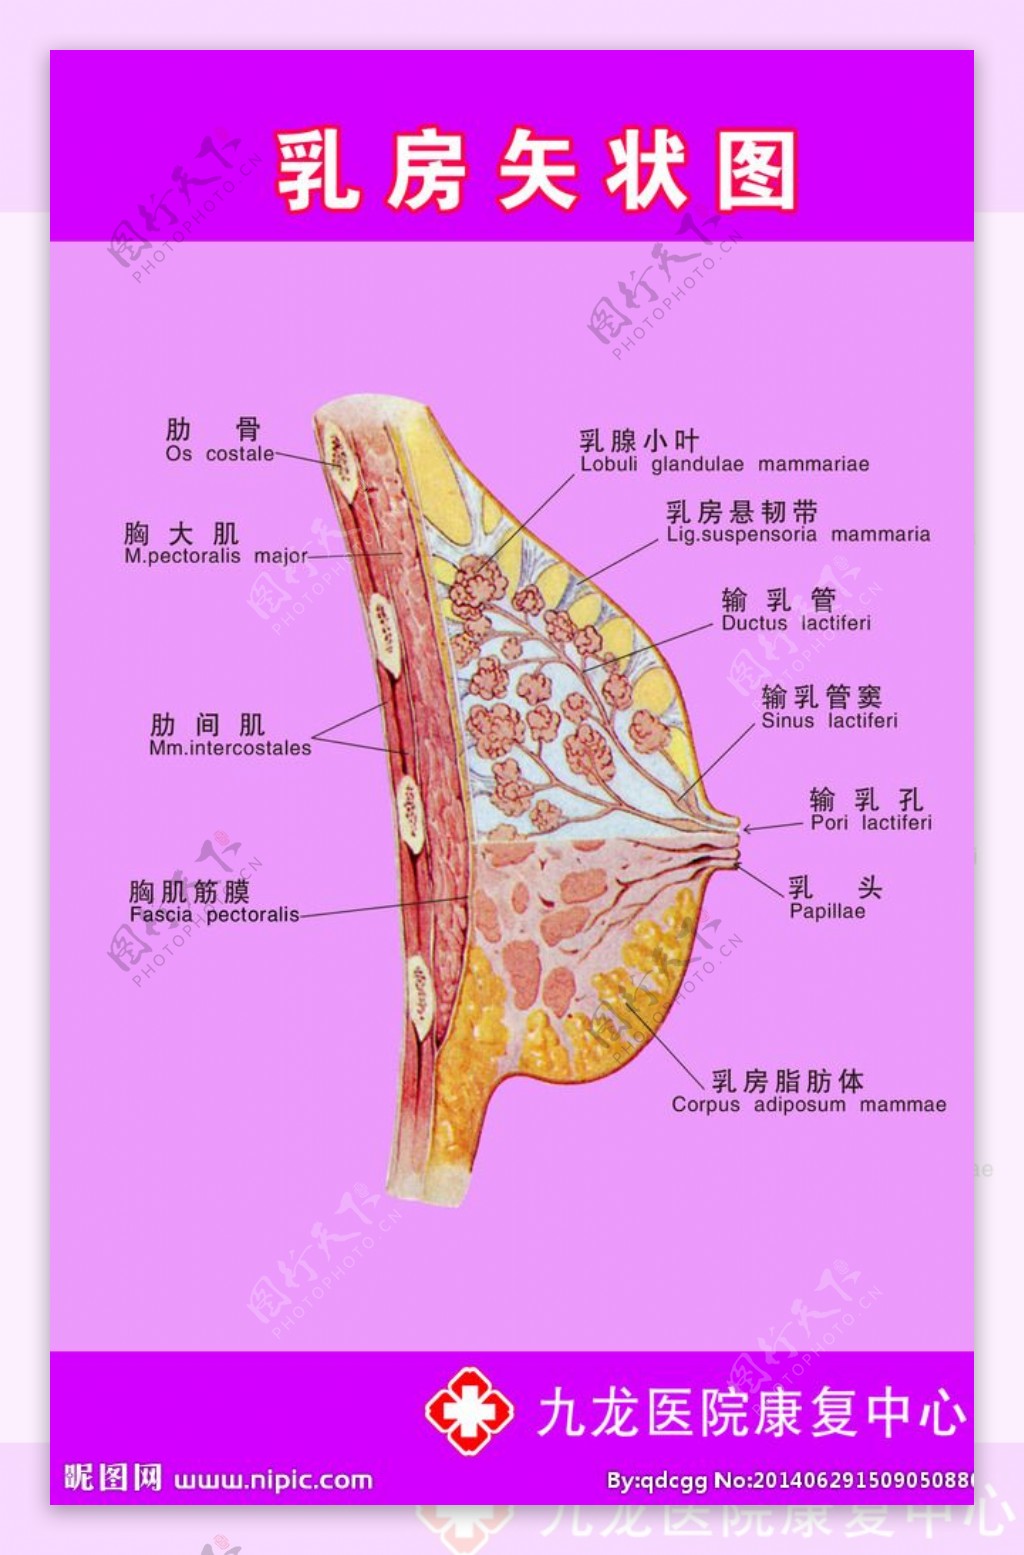 乳房結構圖解剖圖 – Ruious